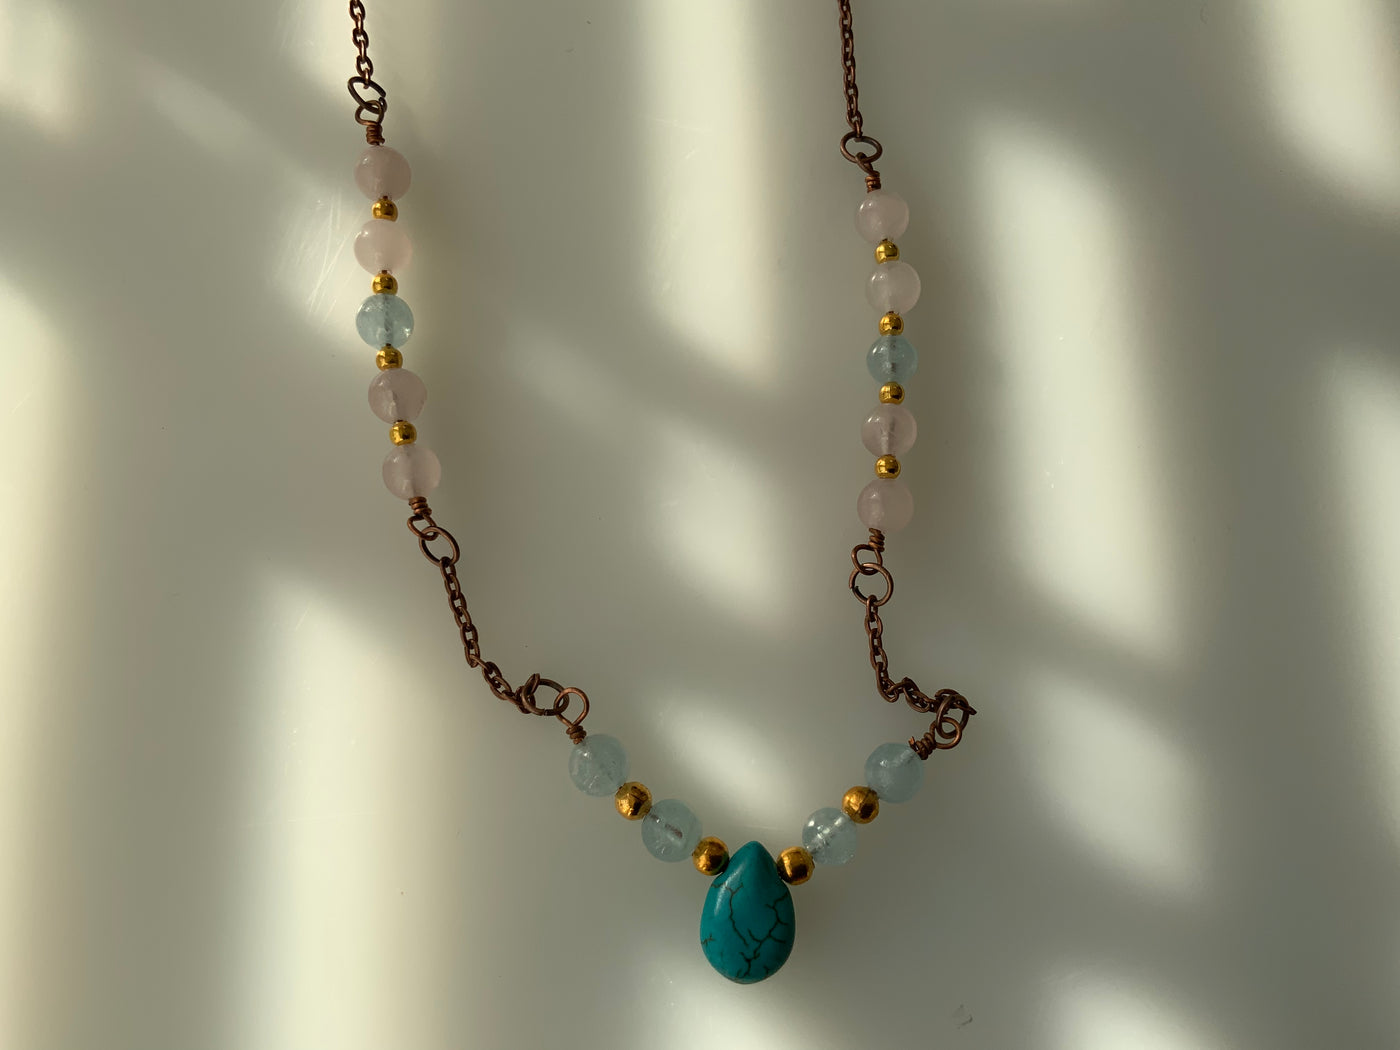 Blaue Howlith-Briolette, Aquamarin und Rosenquarz in einer Halskette.